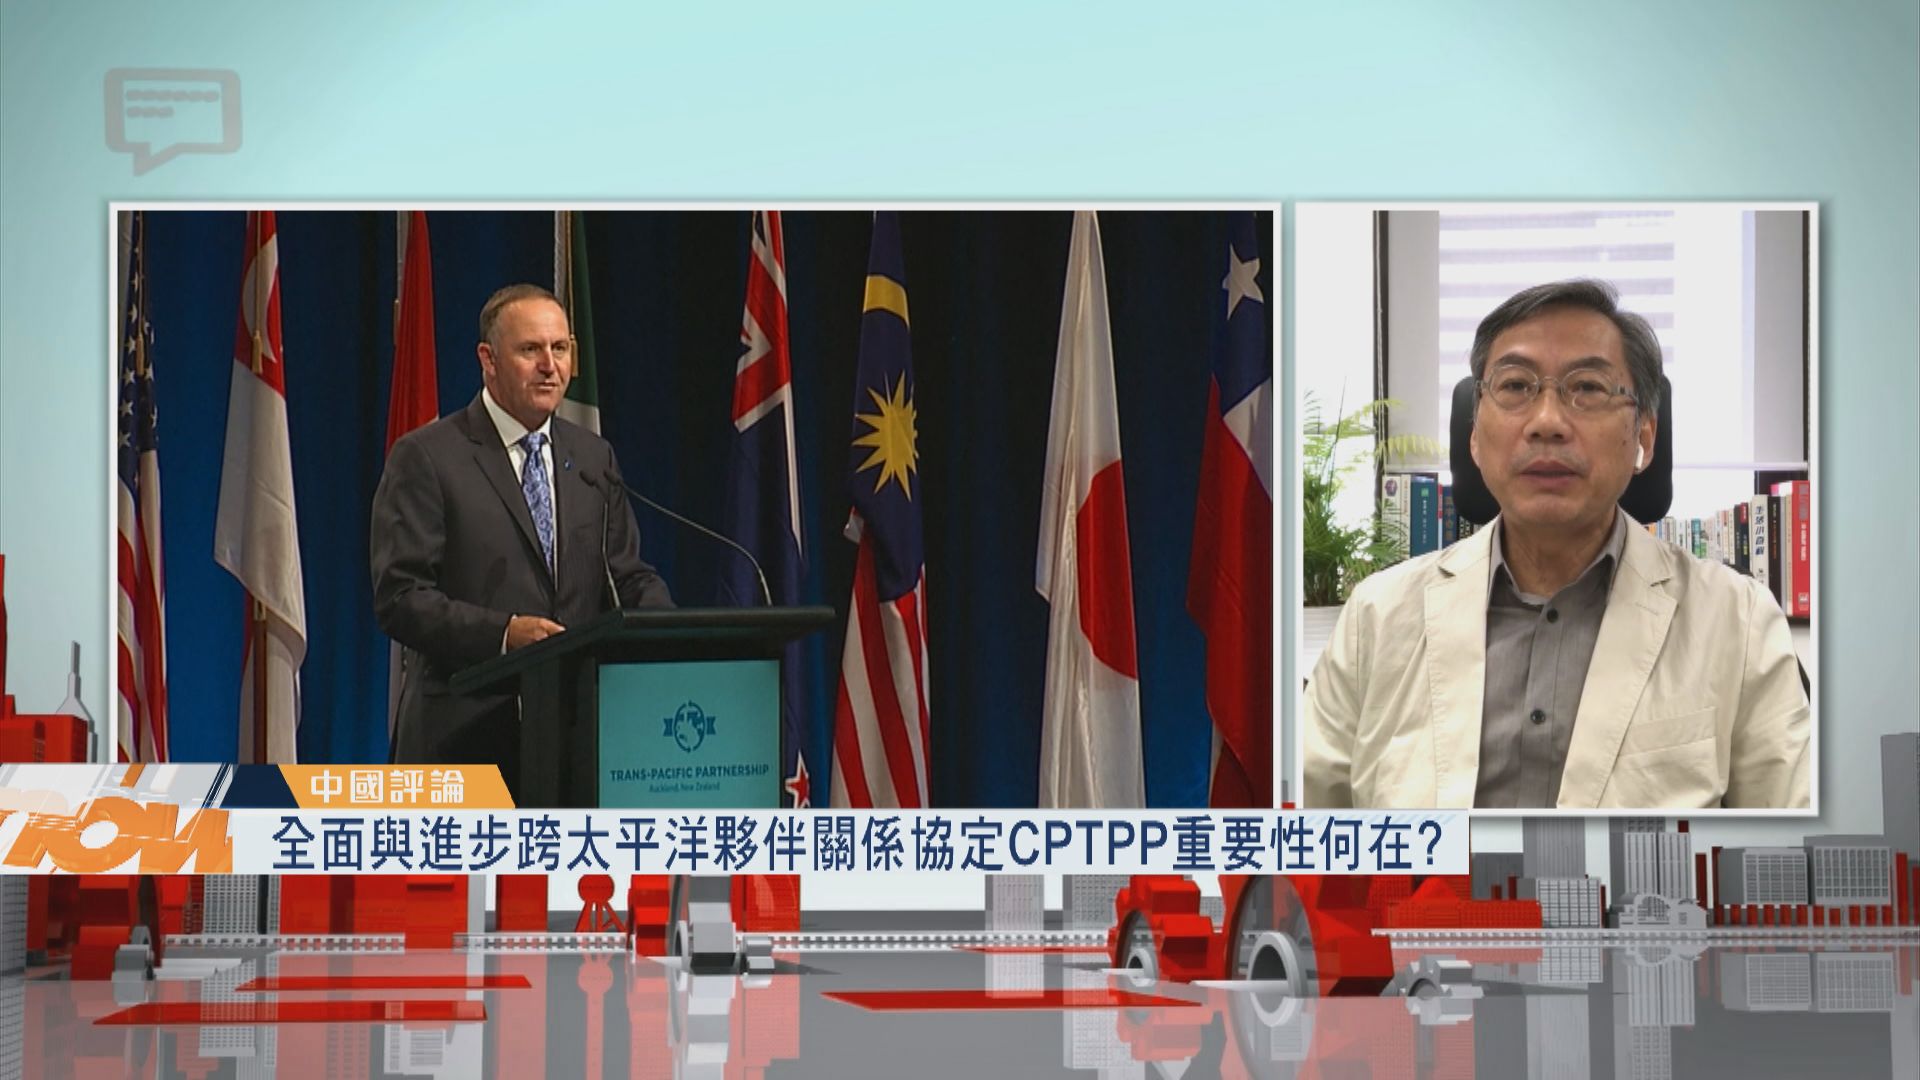 【中國評論】全面與進步跨太平洋夥伴關係協定CPTPP重要性何在?